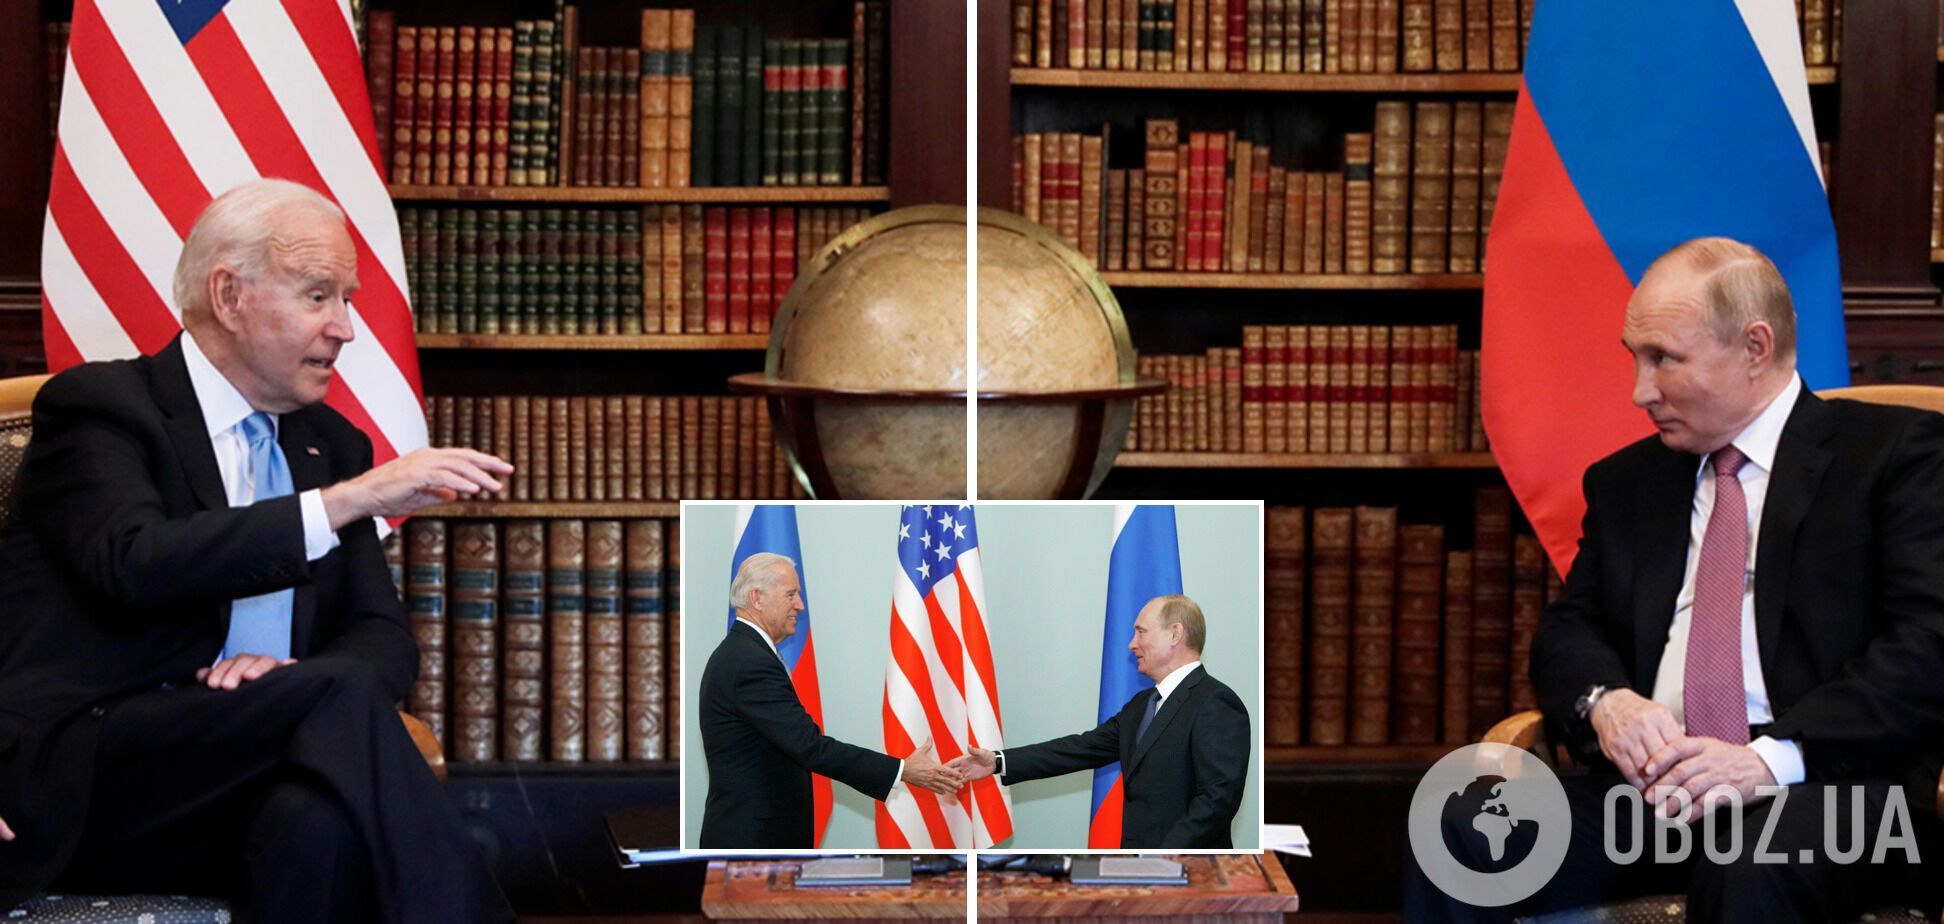 Перша зустріч Байдена та Путіна відбулася в Женеві (Швейцарія) в червні 2021-го